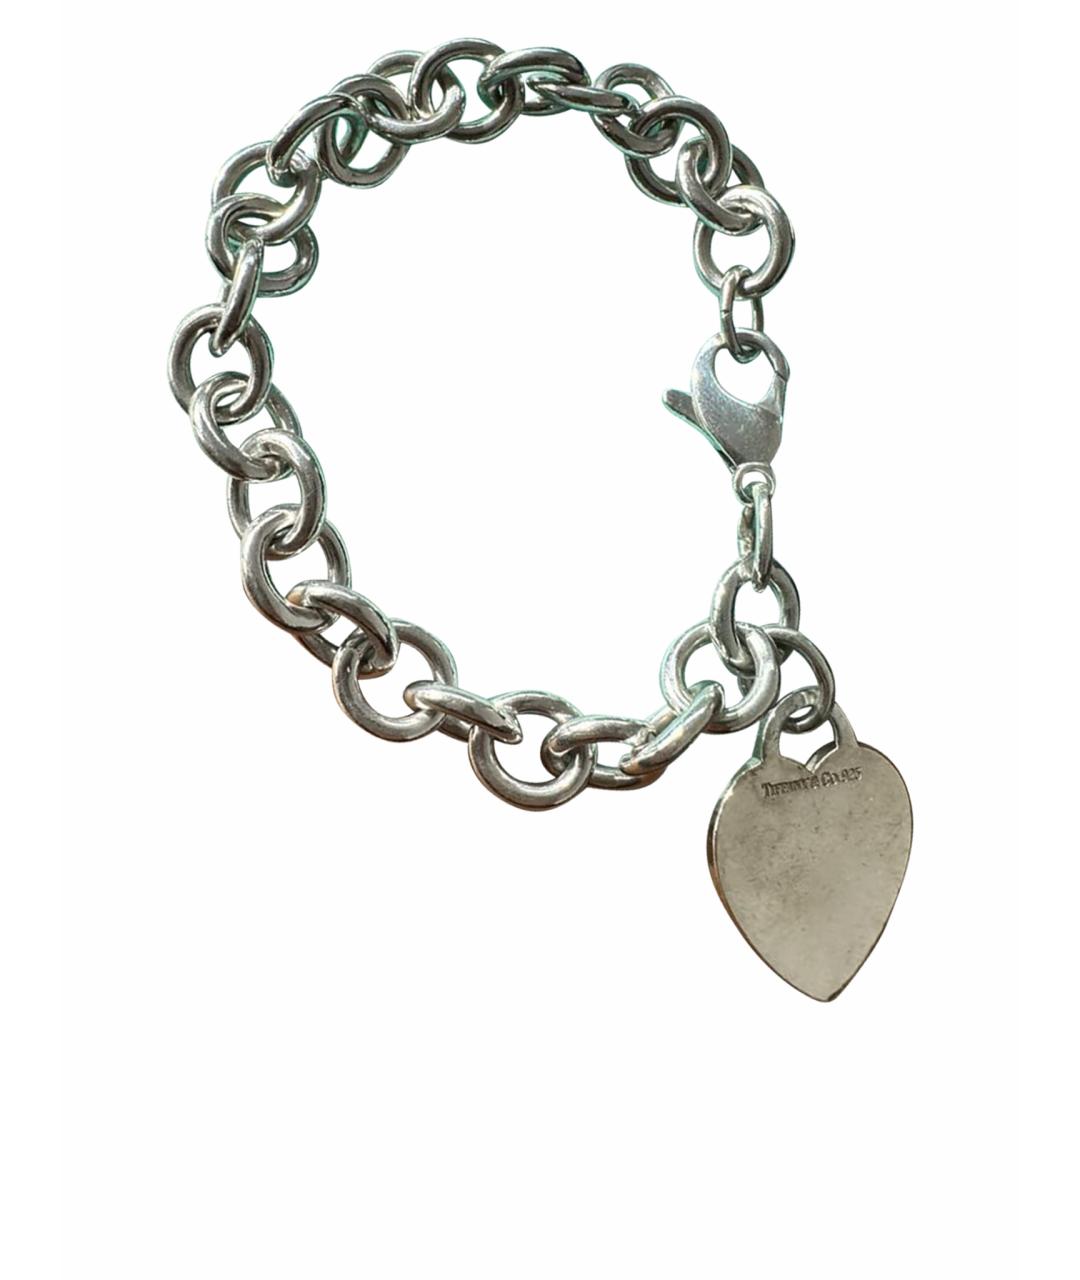 TIFFANY&CO Серебрянный серебряный браслет, фото 1